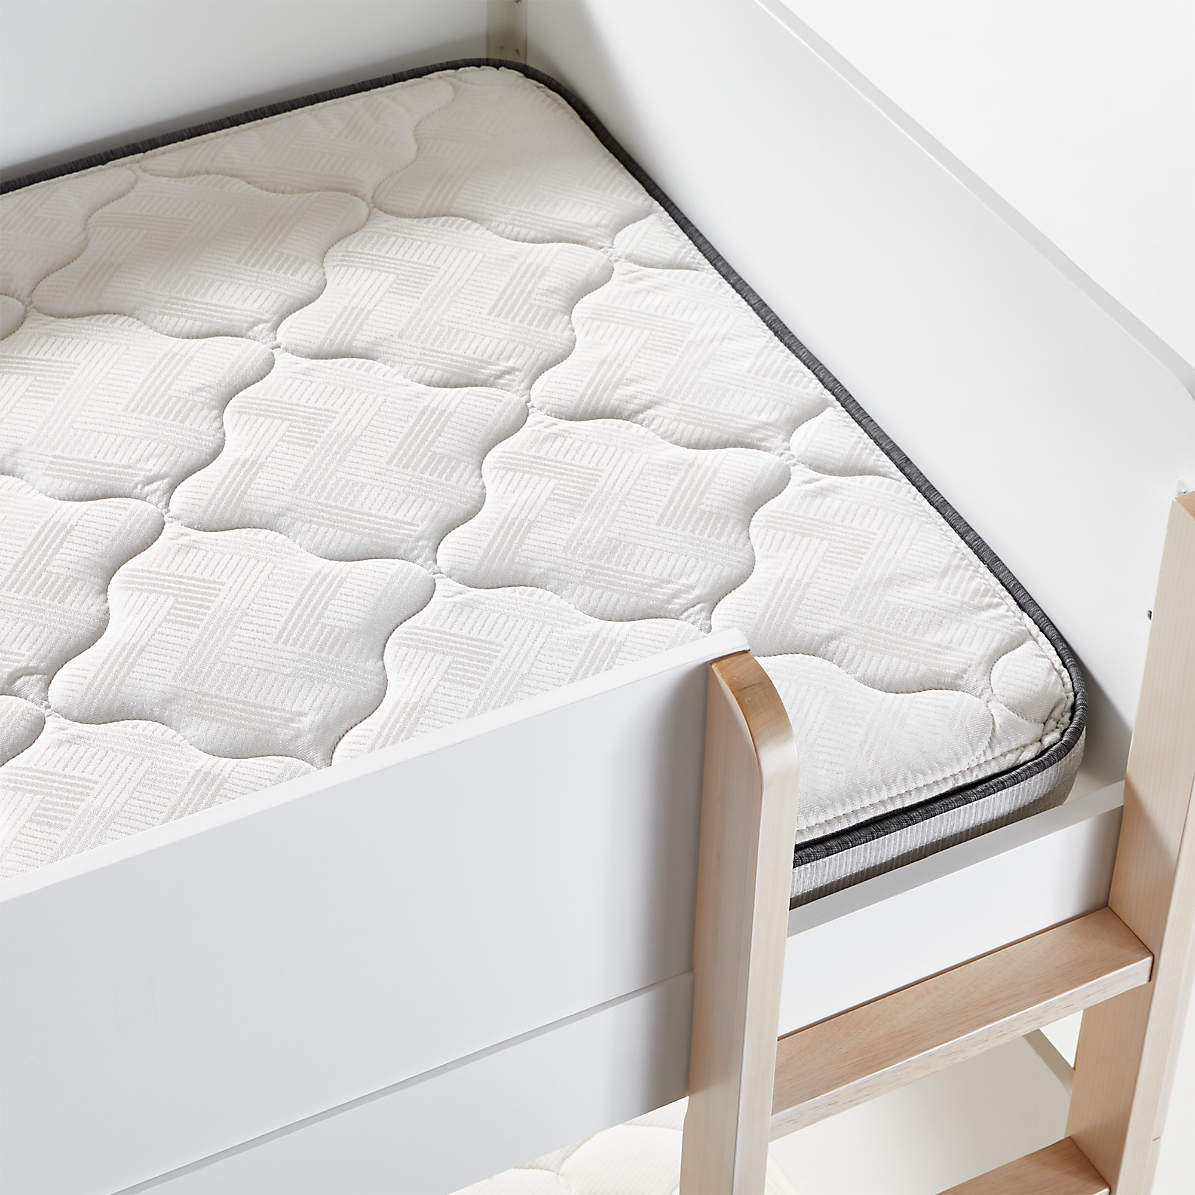 Simmons Beautyrest Foam Twin Bunk, Bunk Bed Mattress Size